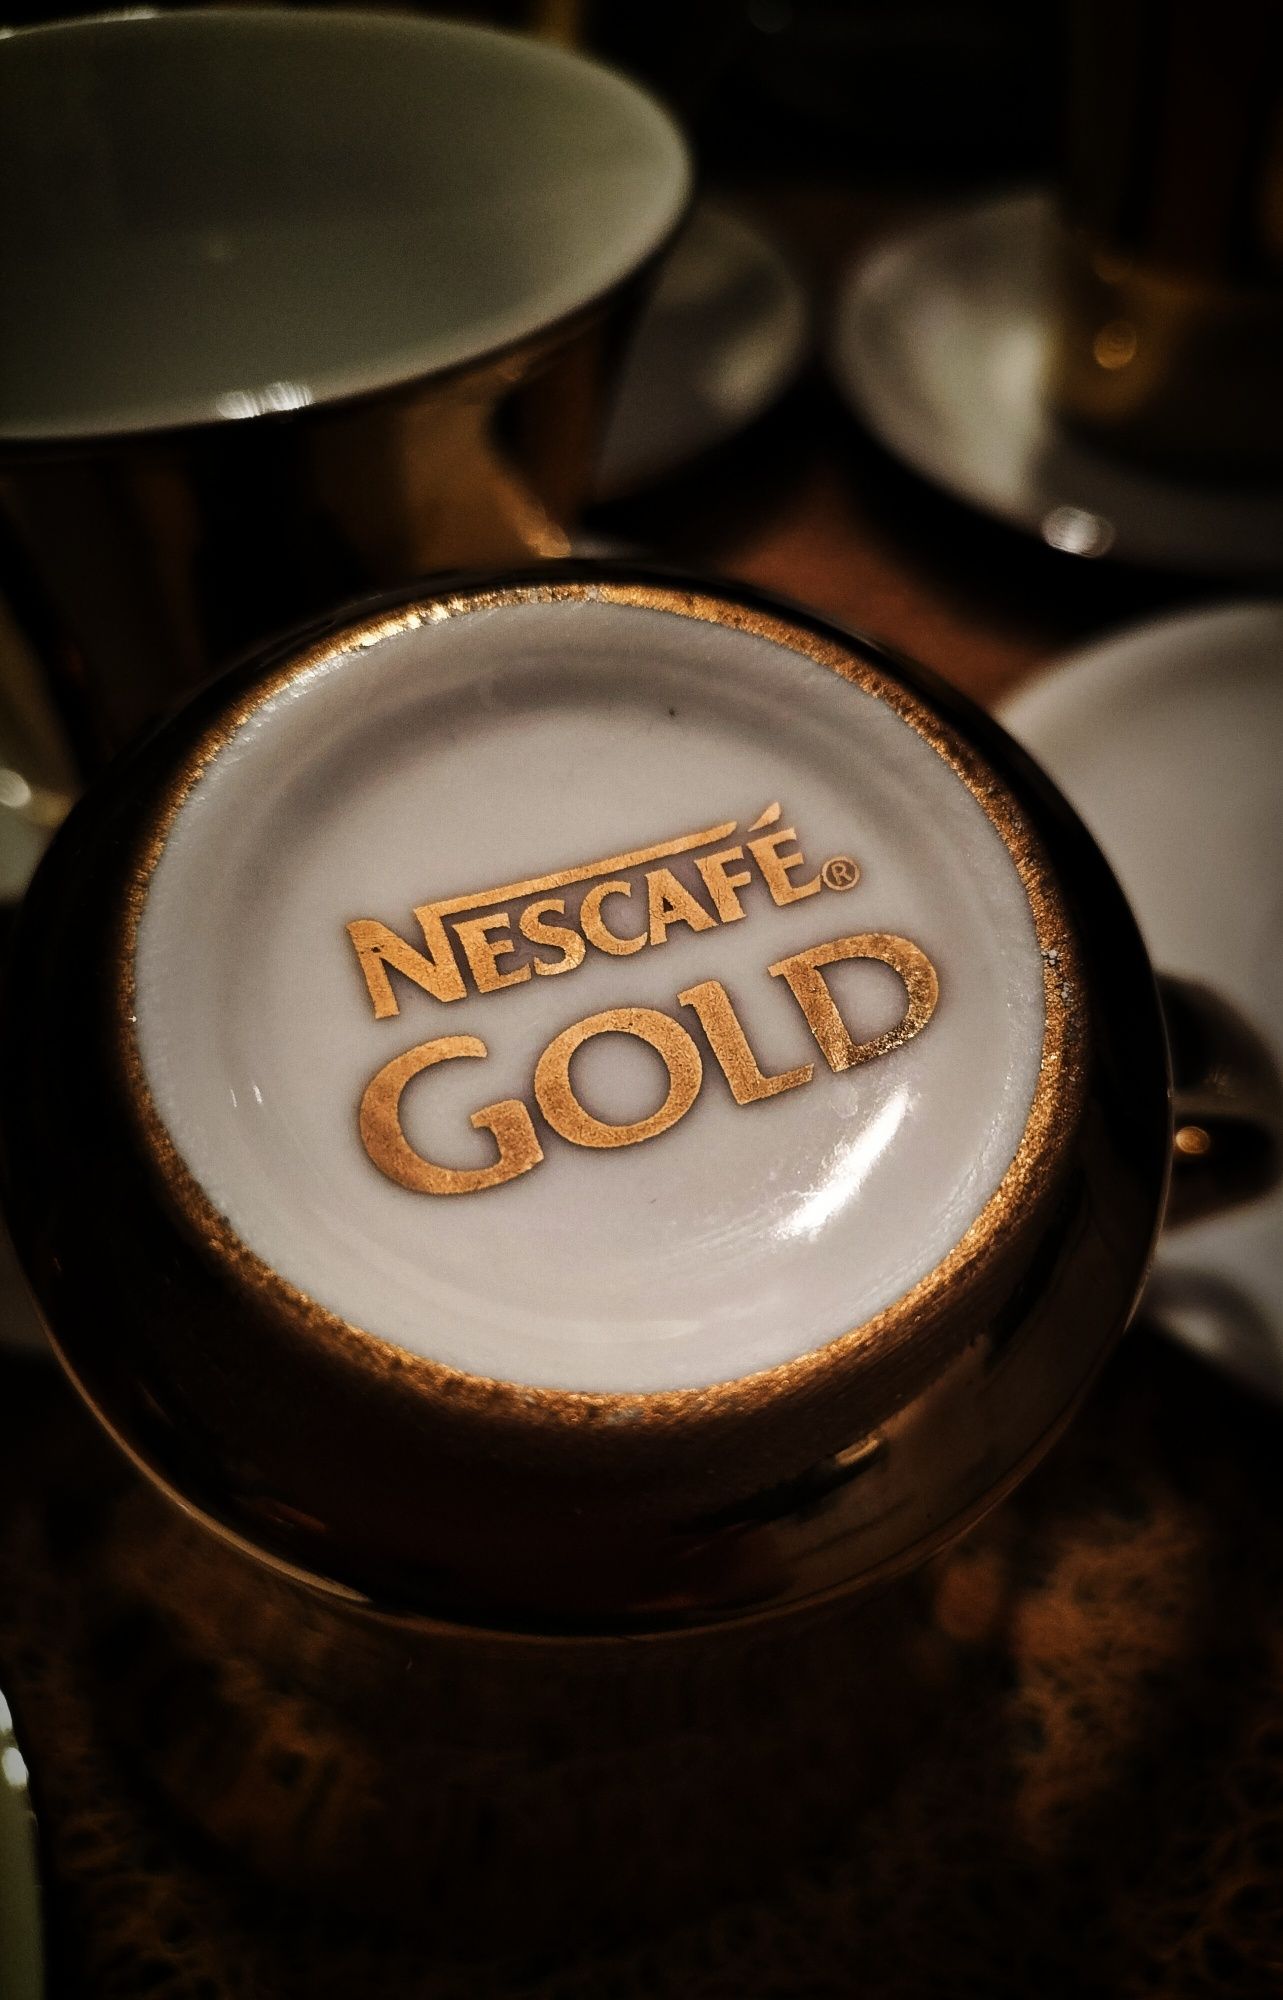 Złote, limitowane filiżanki Nescafe Gold. Komplet